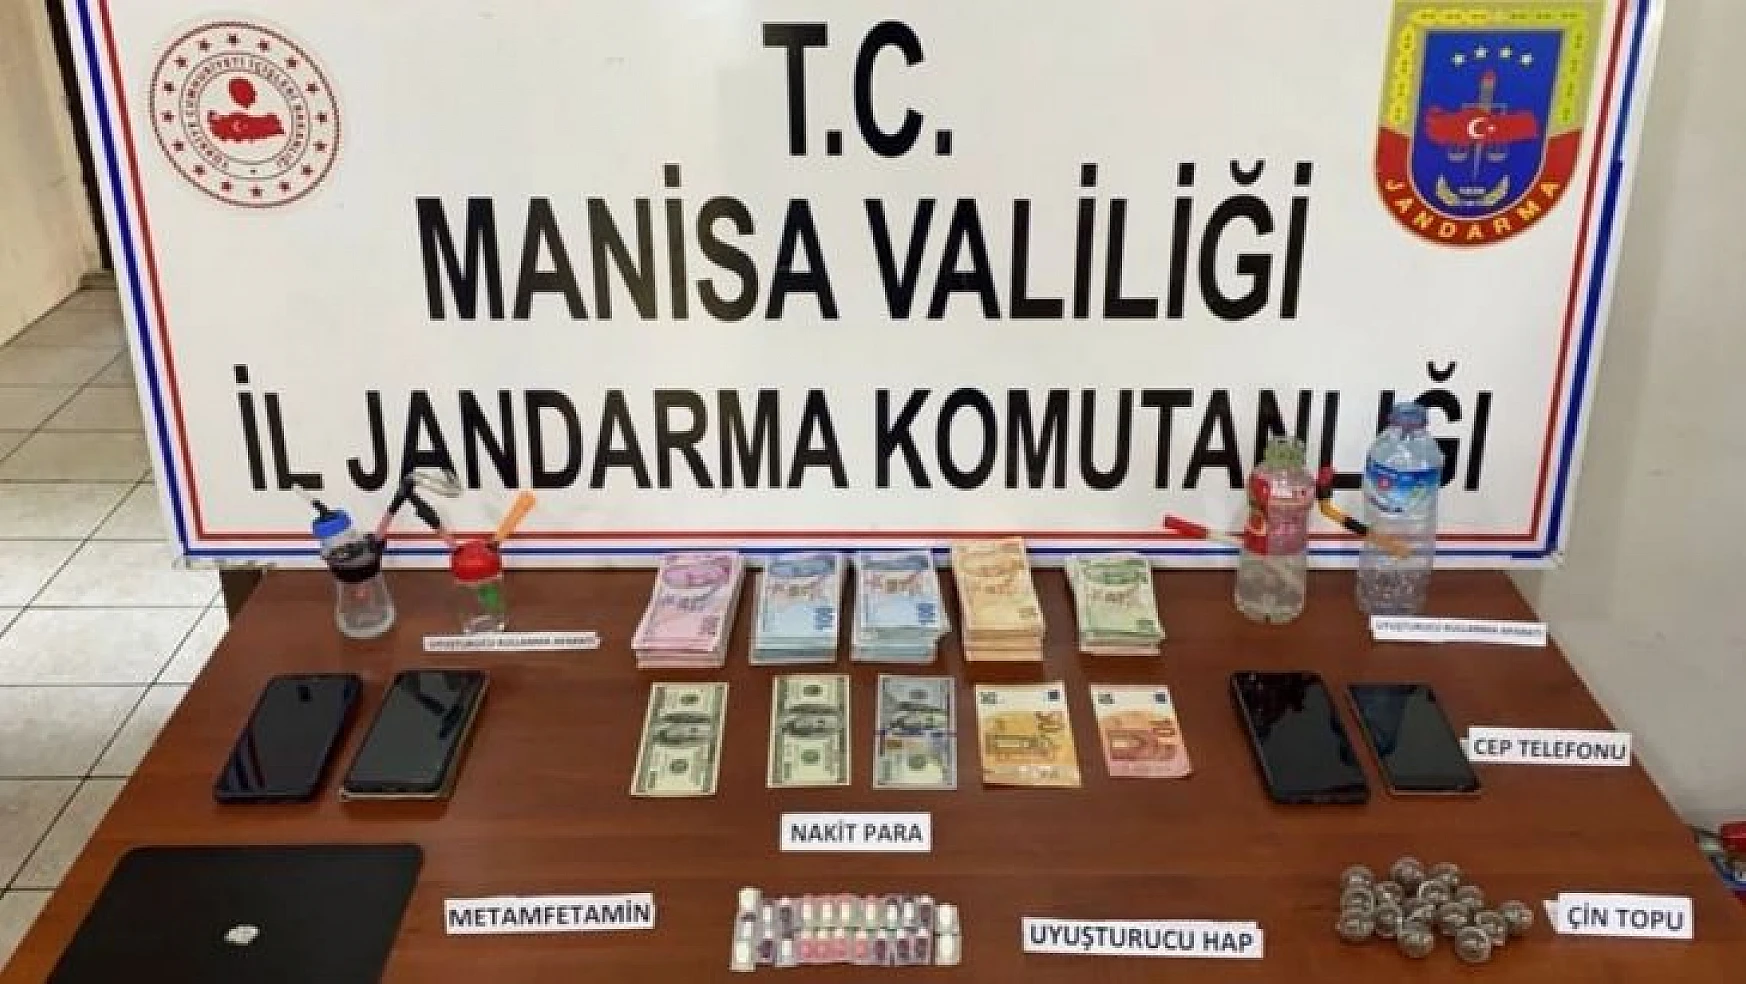 Manisa'da jandarmadan uyuşturucu operasyonu: 2 gözaltı